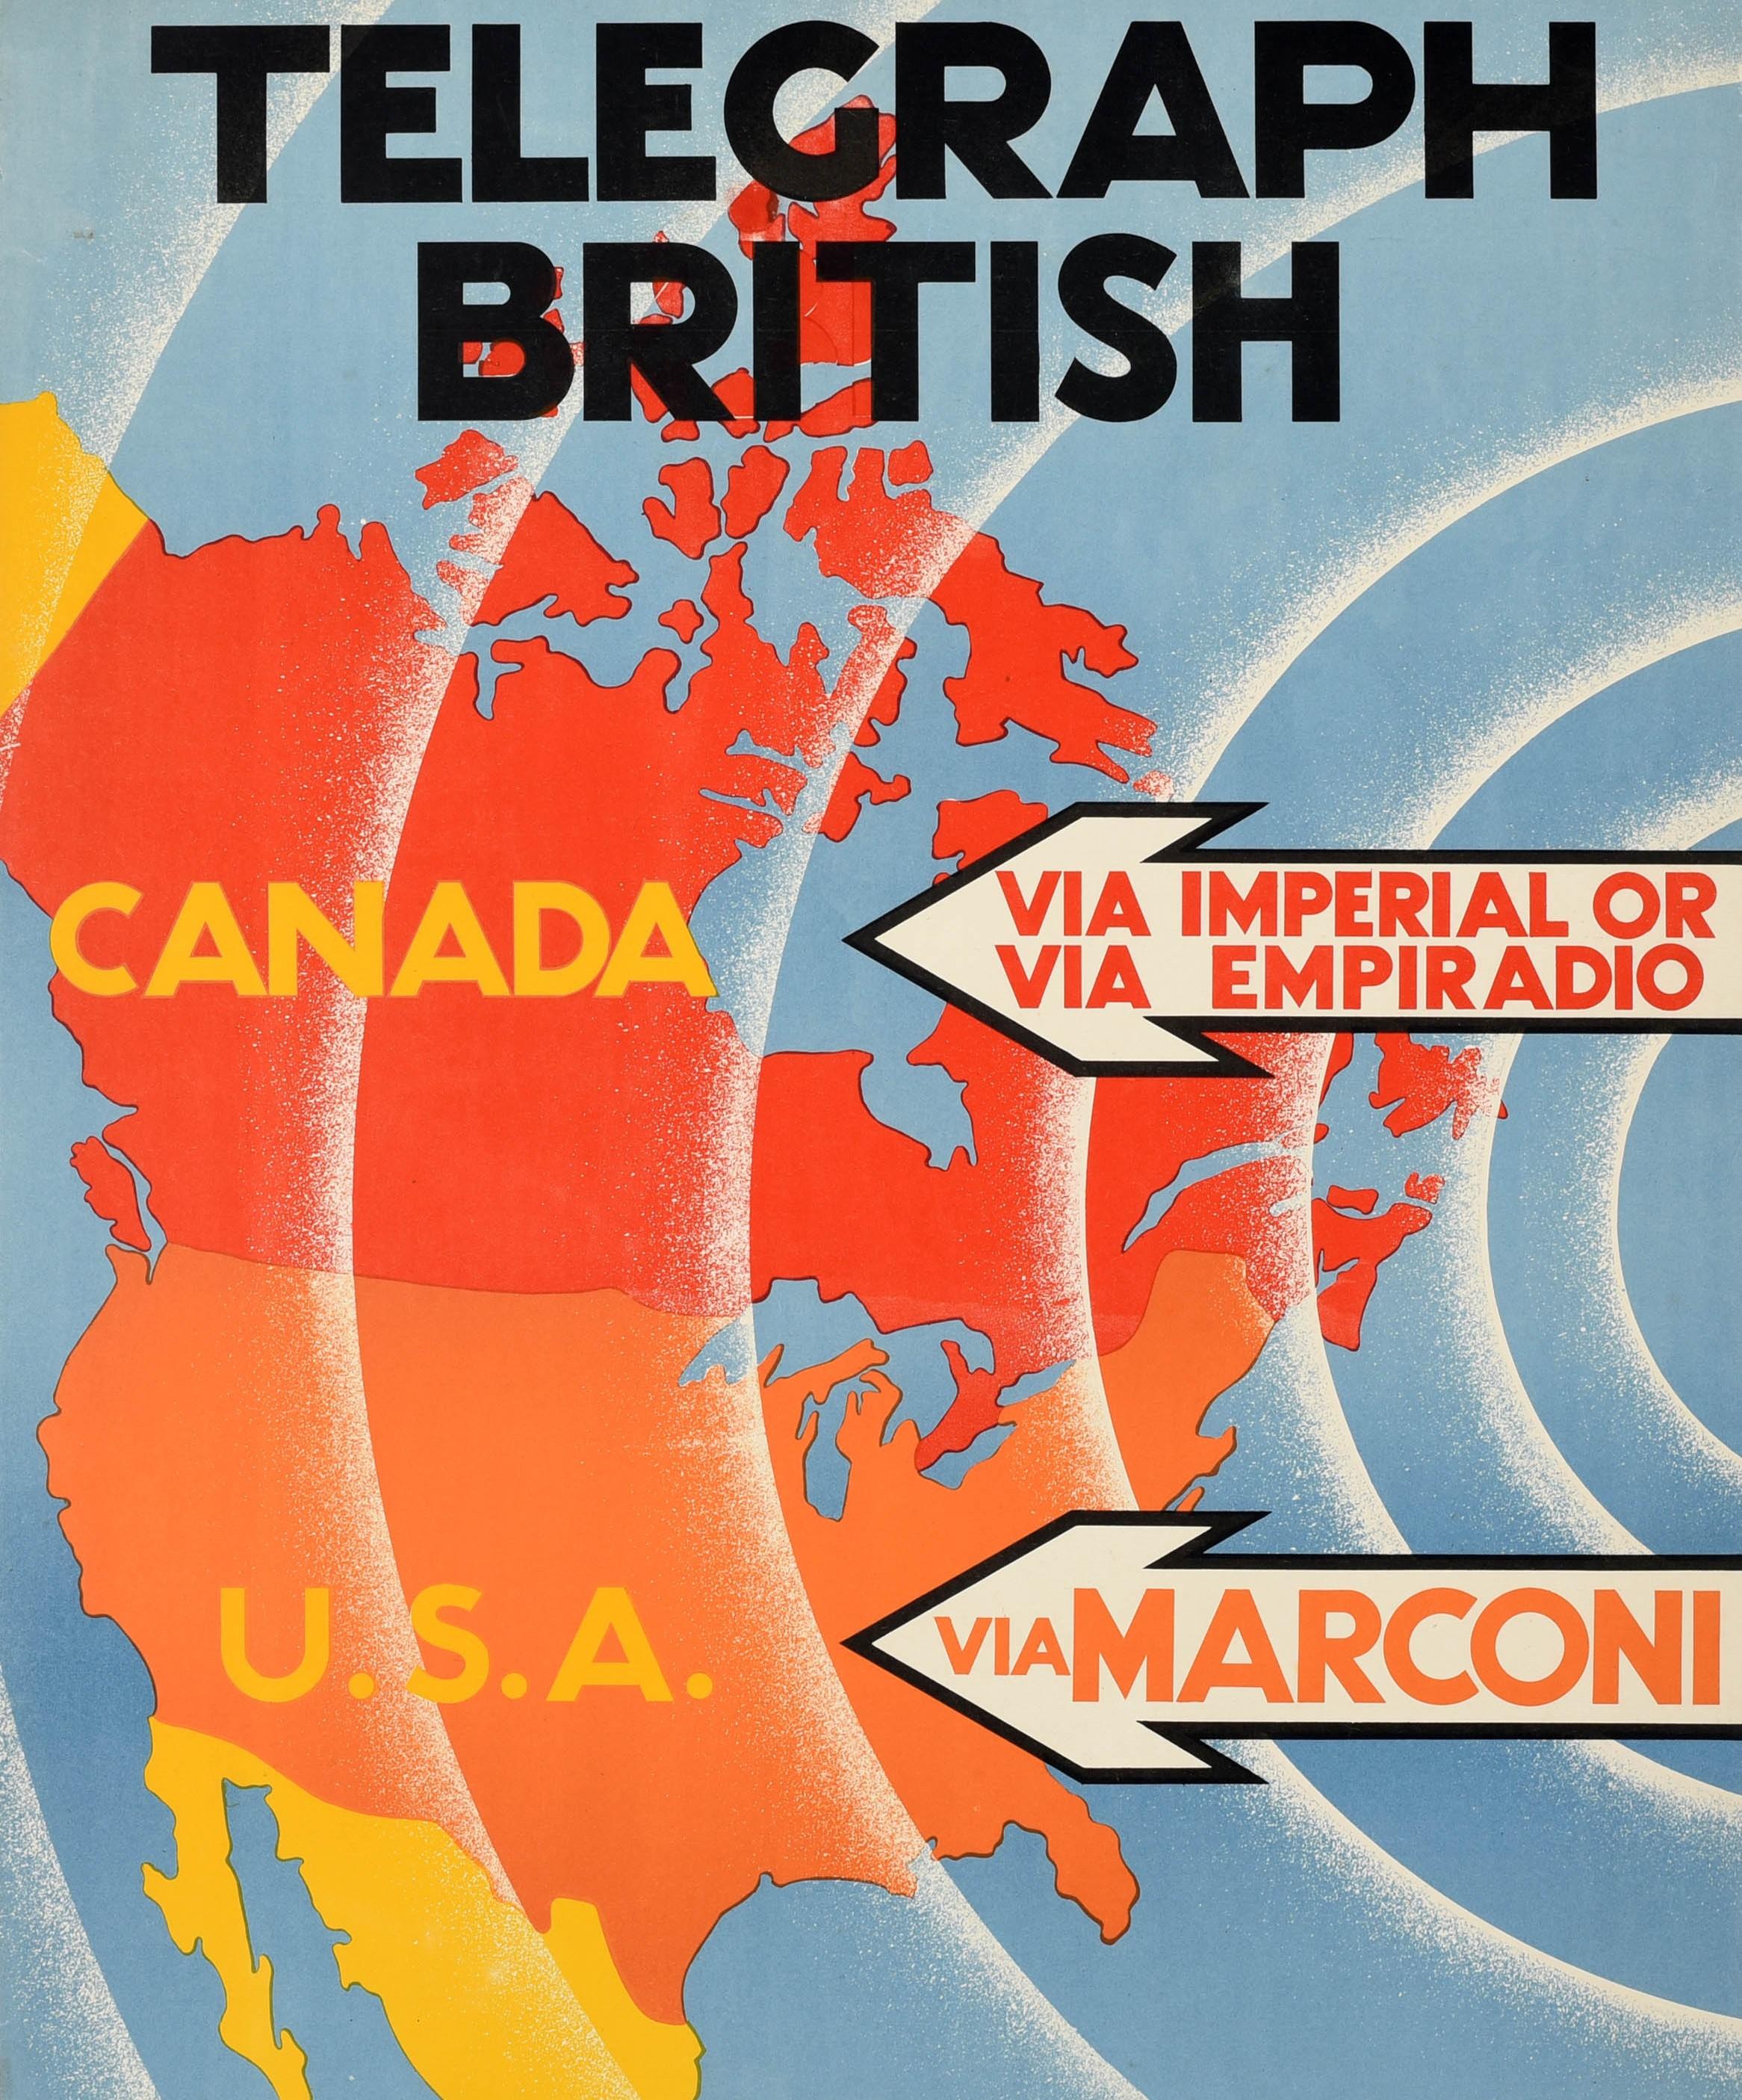 Original Vintage-Werbeplakat - Telegraph British Canada via Imperial oder via Empiradio USA via Marconi British Capital British Enterprise British Labour - mit einem großartigen Entwurf des bedeutenden Werbegrafikers und Plakatdesigners Albert